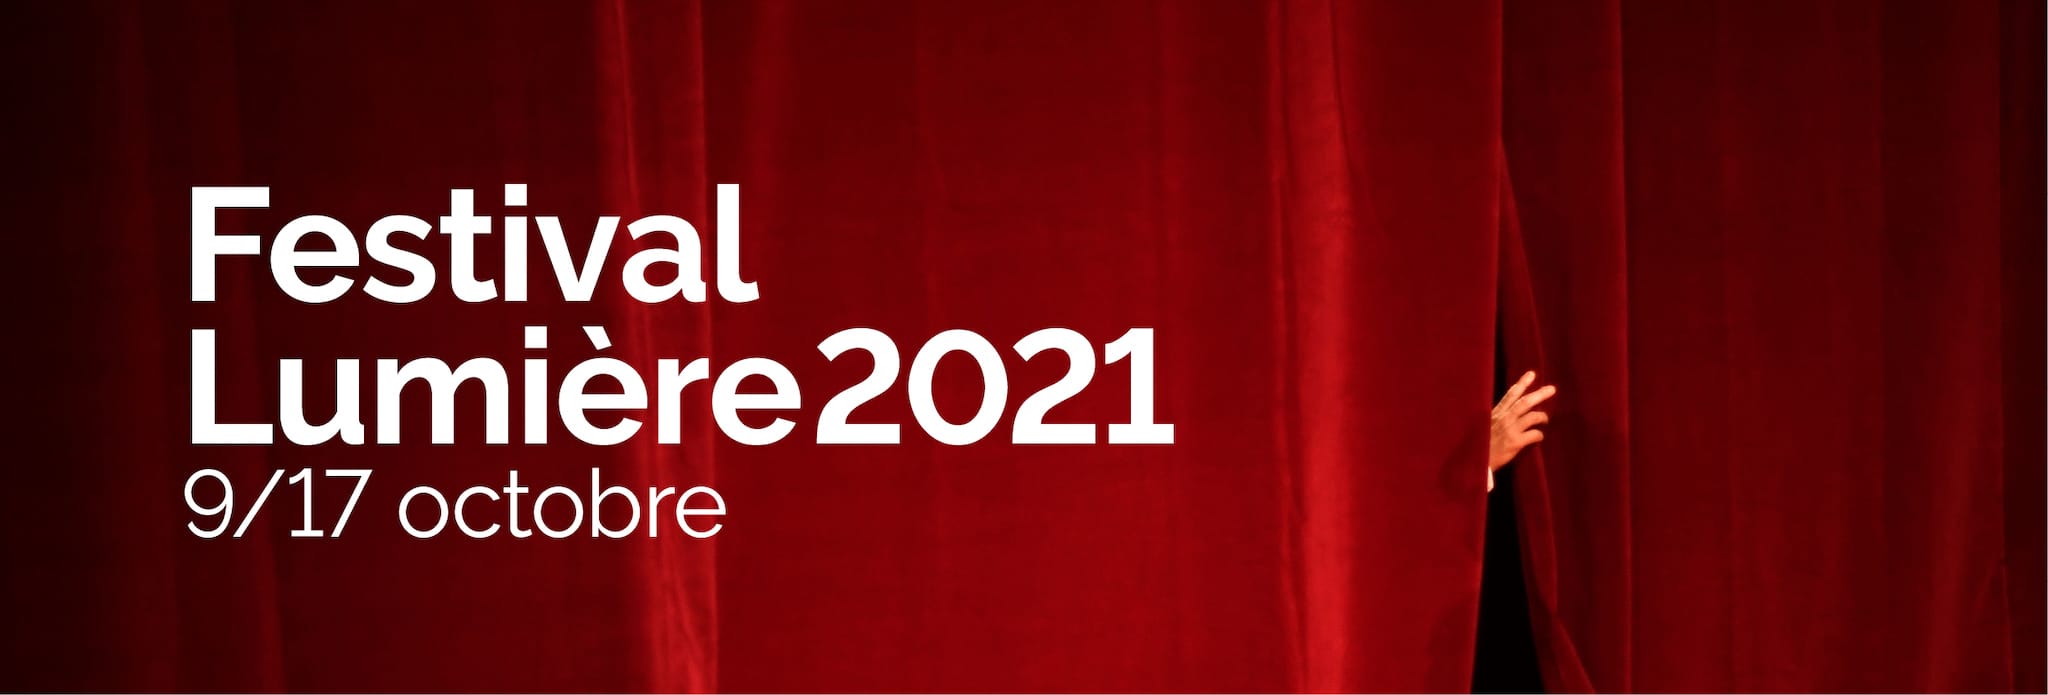 Festival Lumière 2021 capture d'écran image festival cinéma